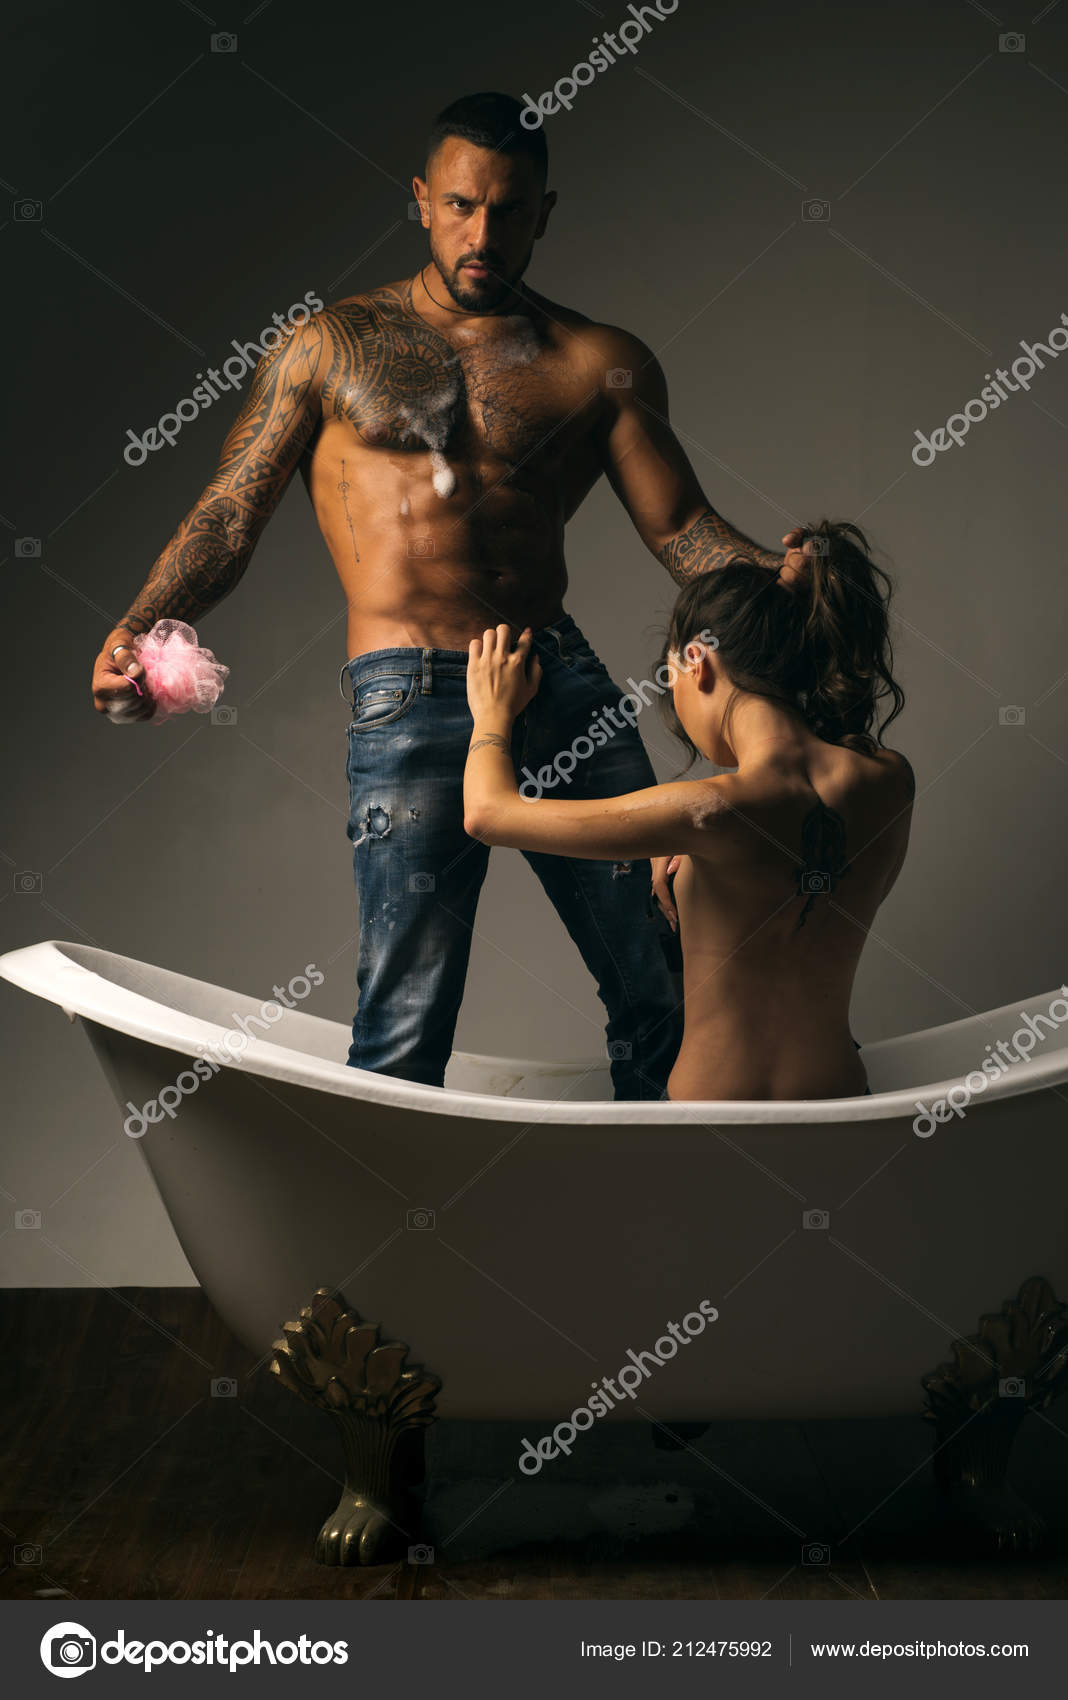 καυλιάρης φωτογραφίες σεξ γυμνό Λεσβιακό γλείψιμο μουνί